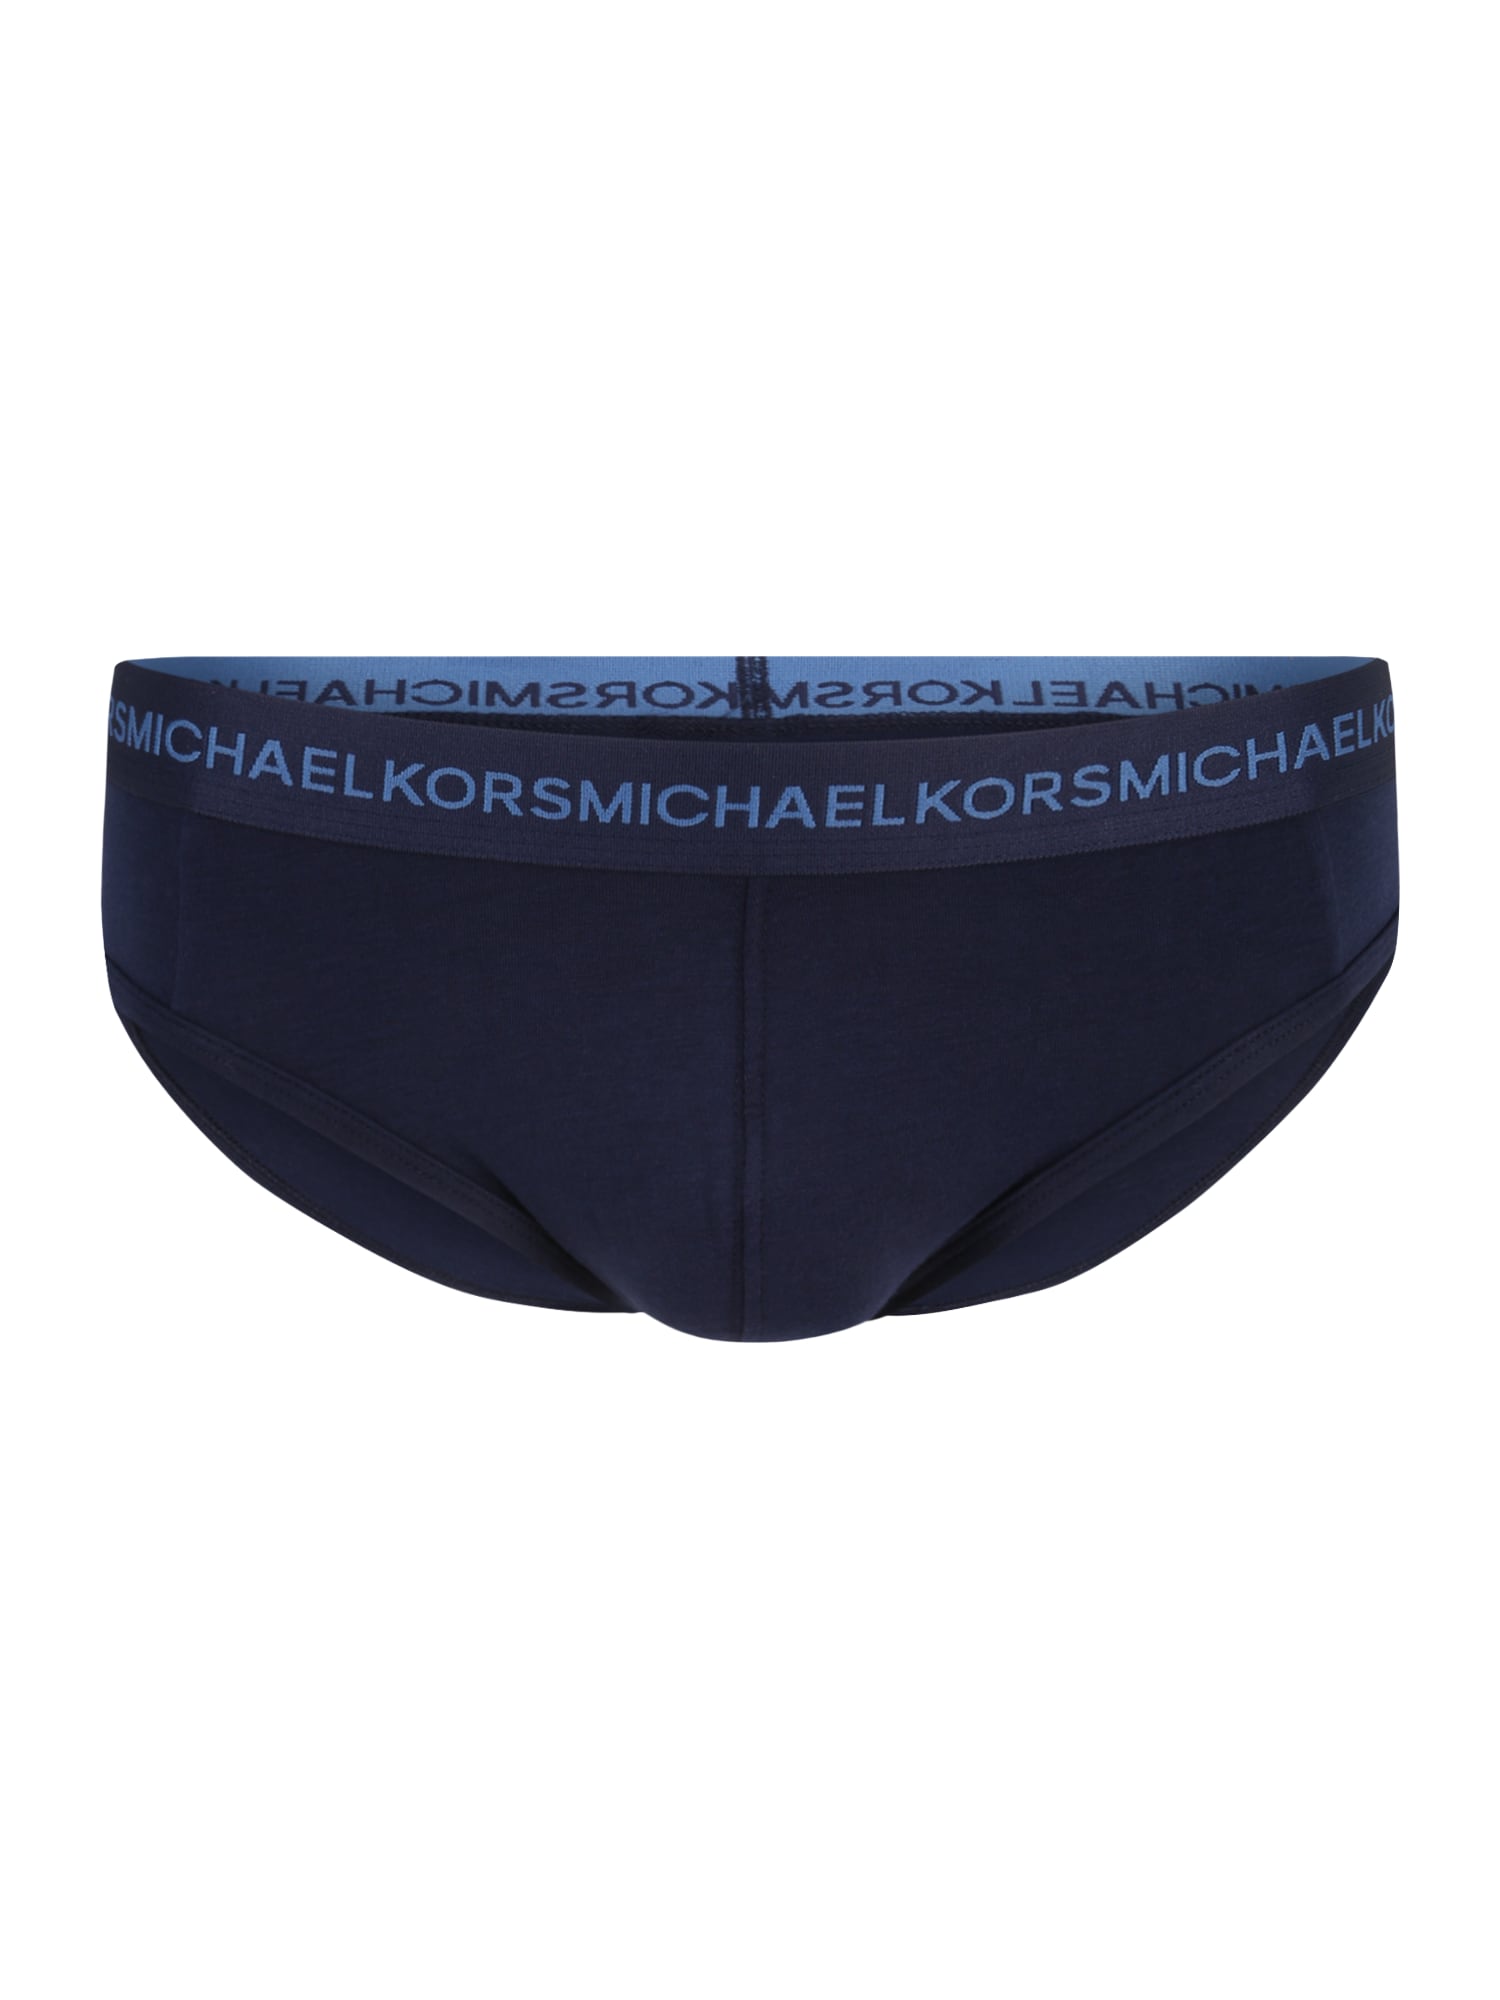 Michael Kors Spodnje hlačke  modra / mornarska